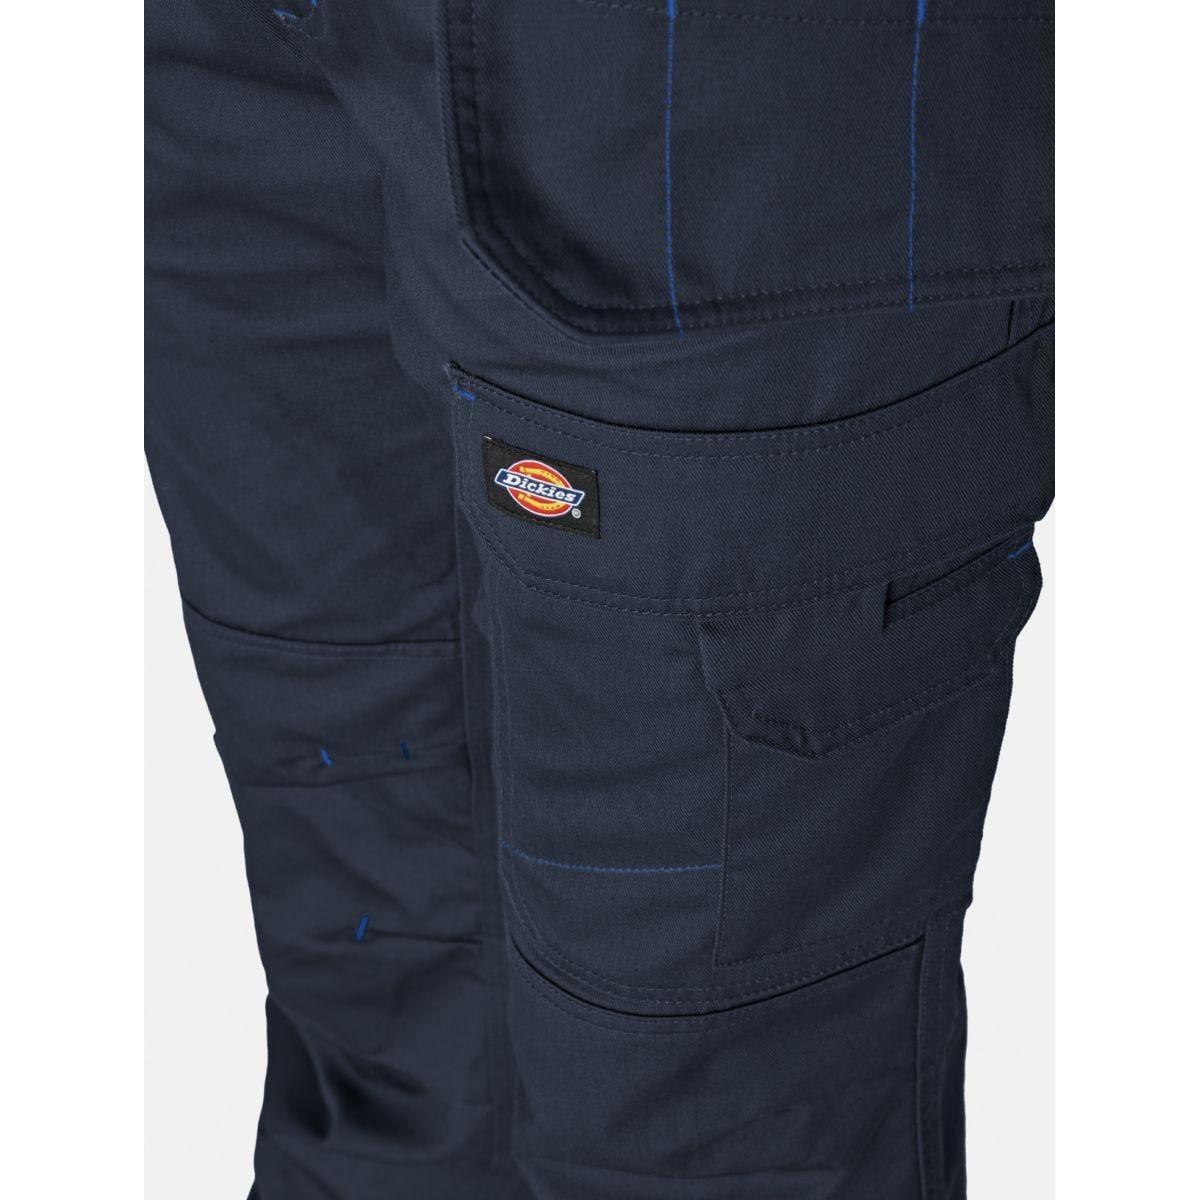 Pantalon Redhawk Pro Bleu marine - Dickies - Taille 44 4